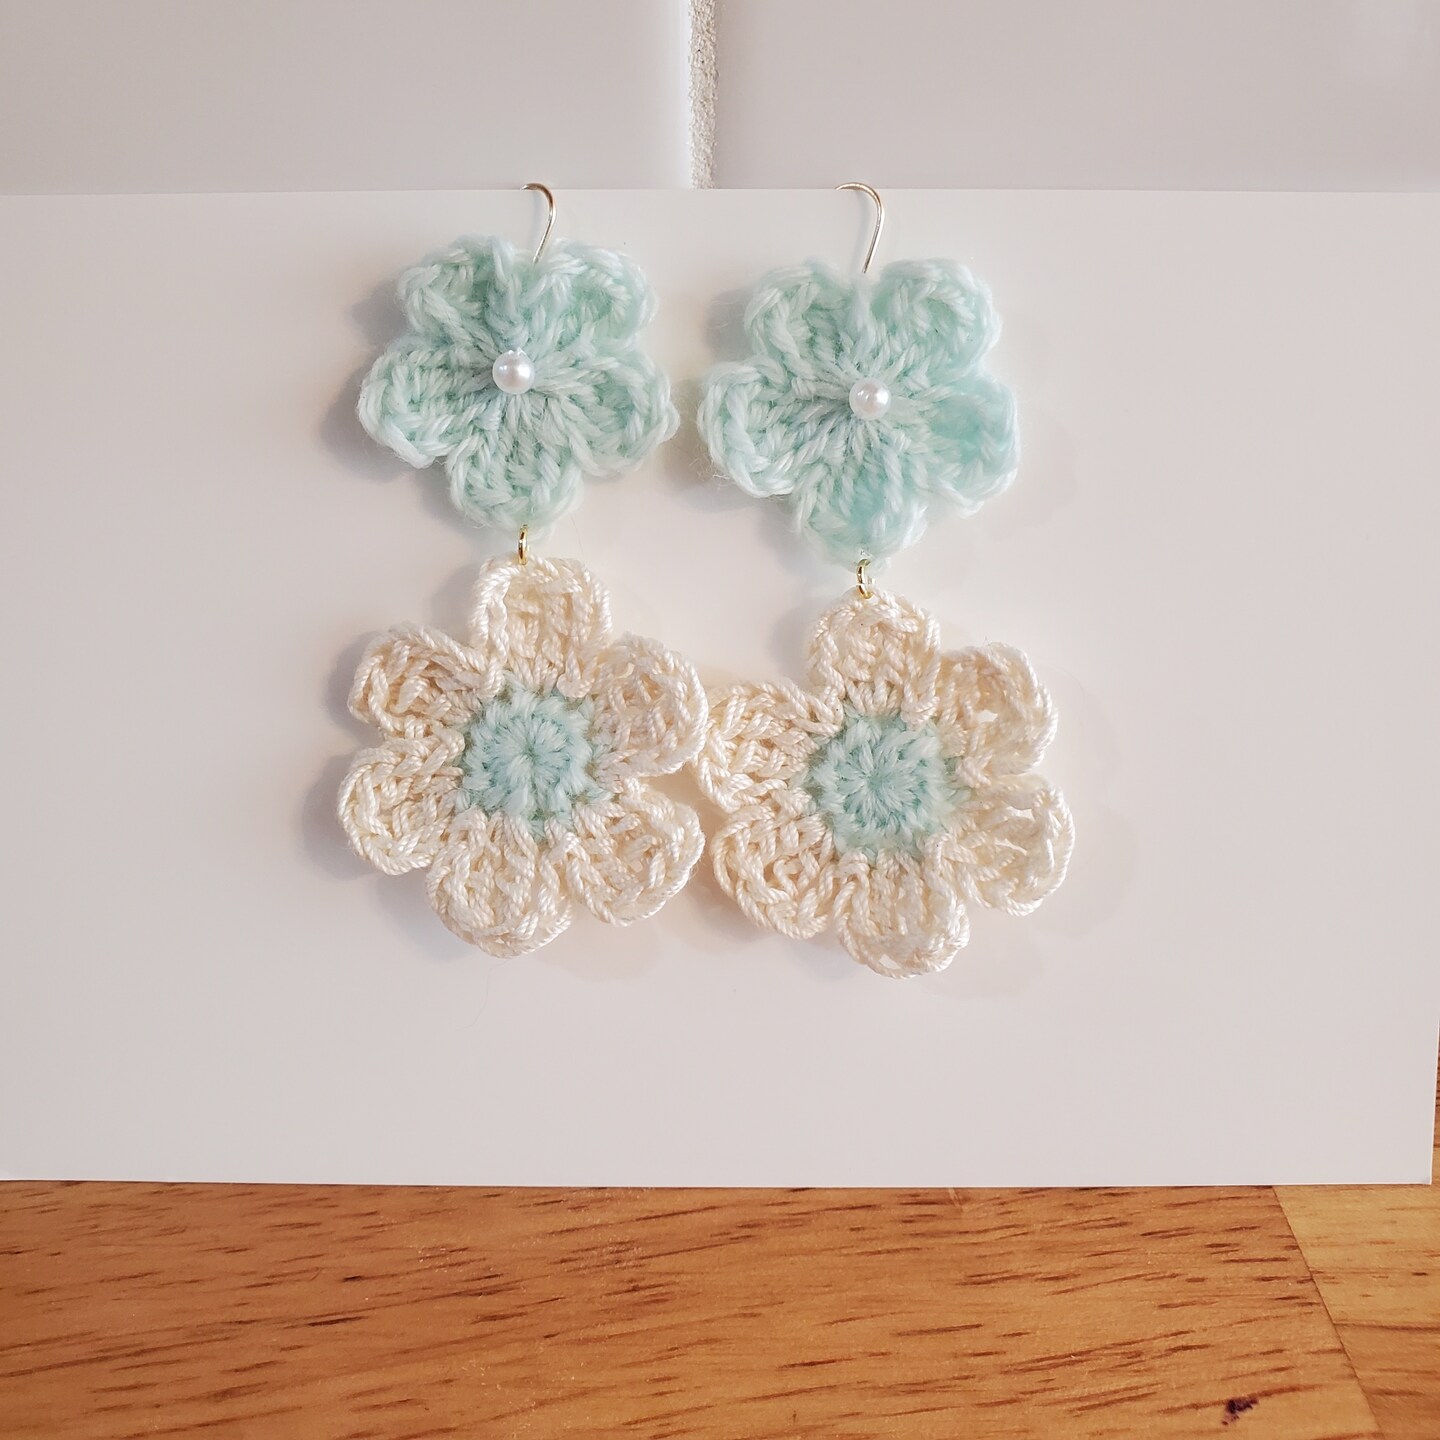 Little Treasures: Flower Crochet Earrings - free pattern